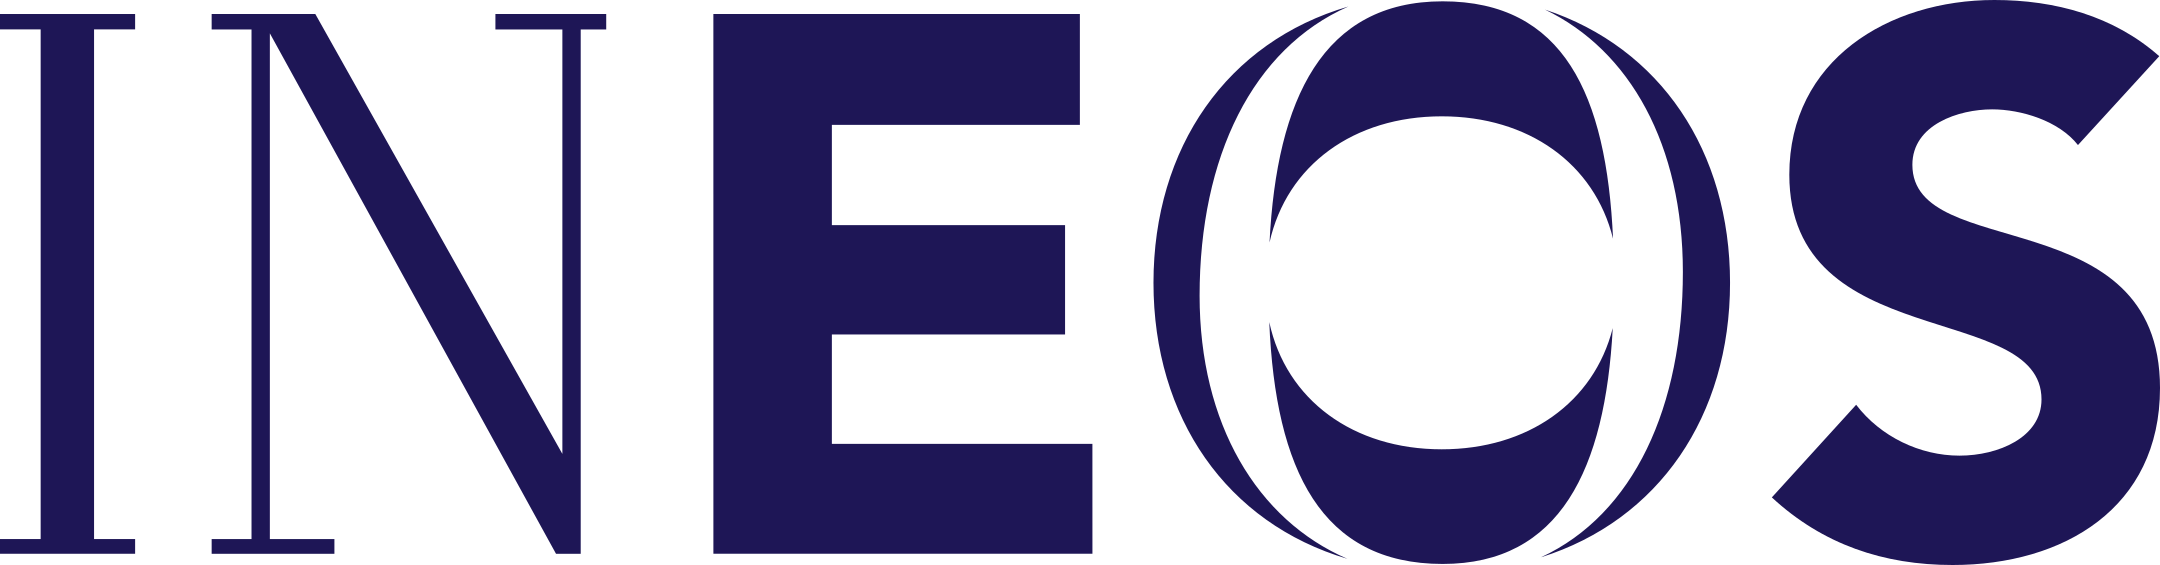 ineos logo 1 - INEOS Logo